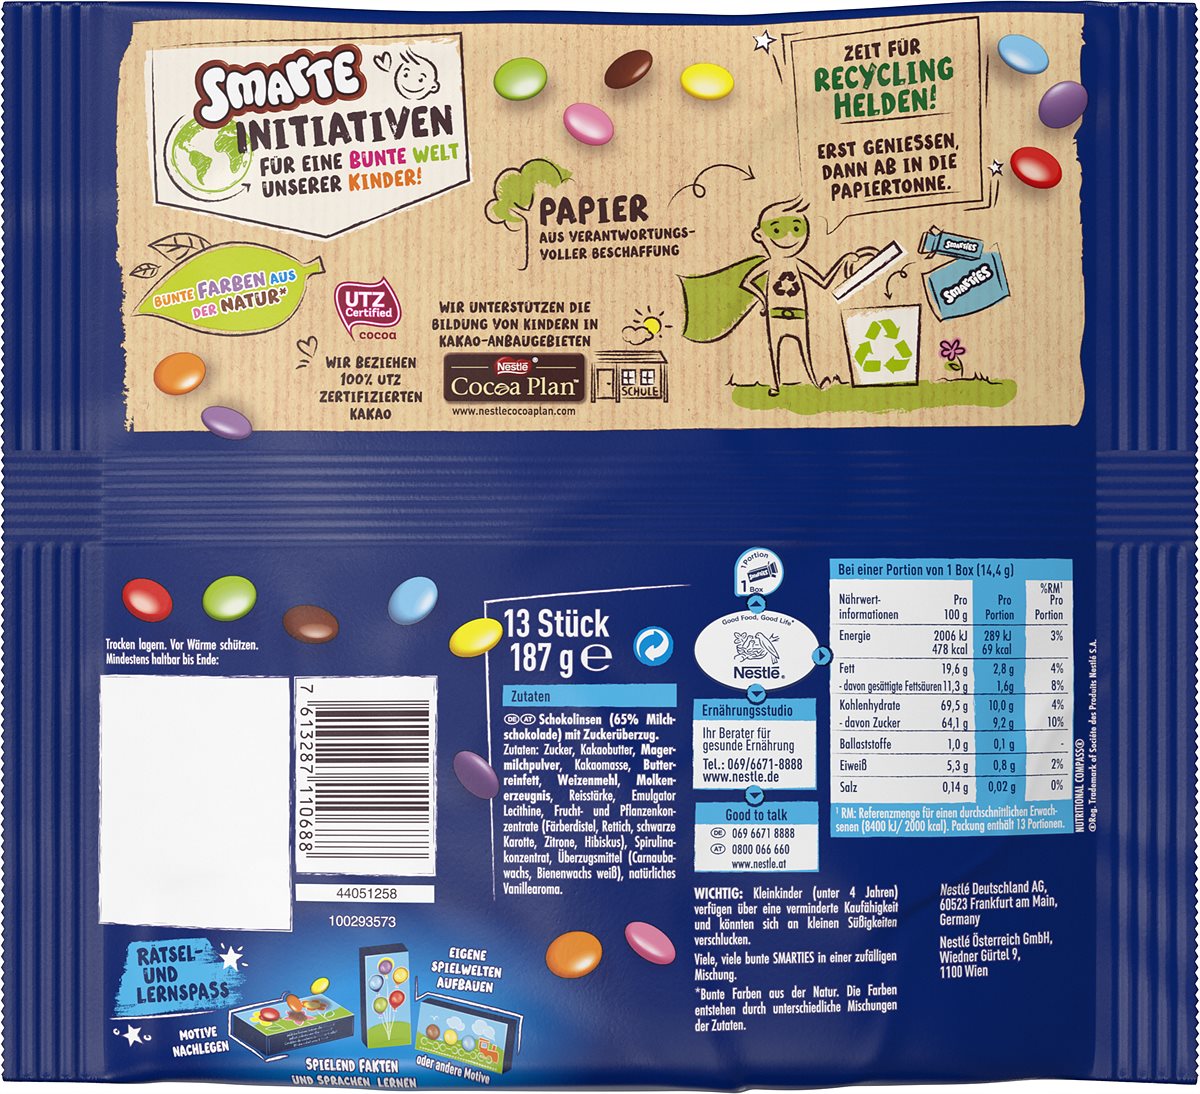 SMARTIES stellt als erste Süßwarenmarke weltweit auf recycelbare Papierverpackungen um